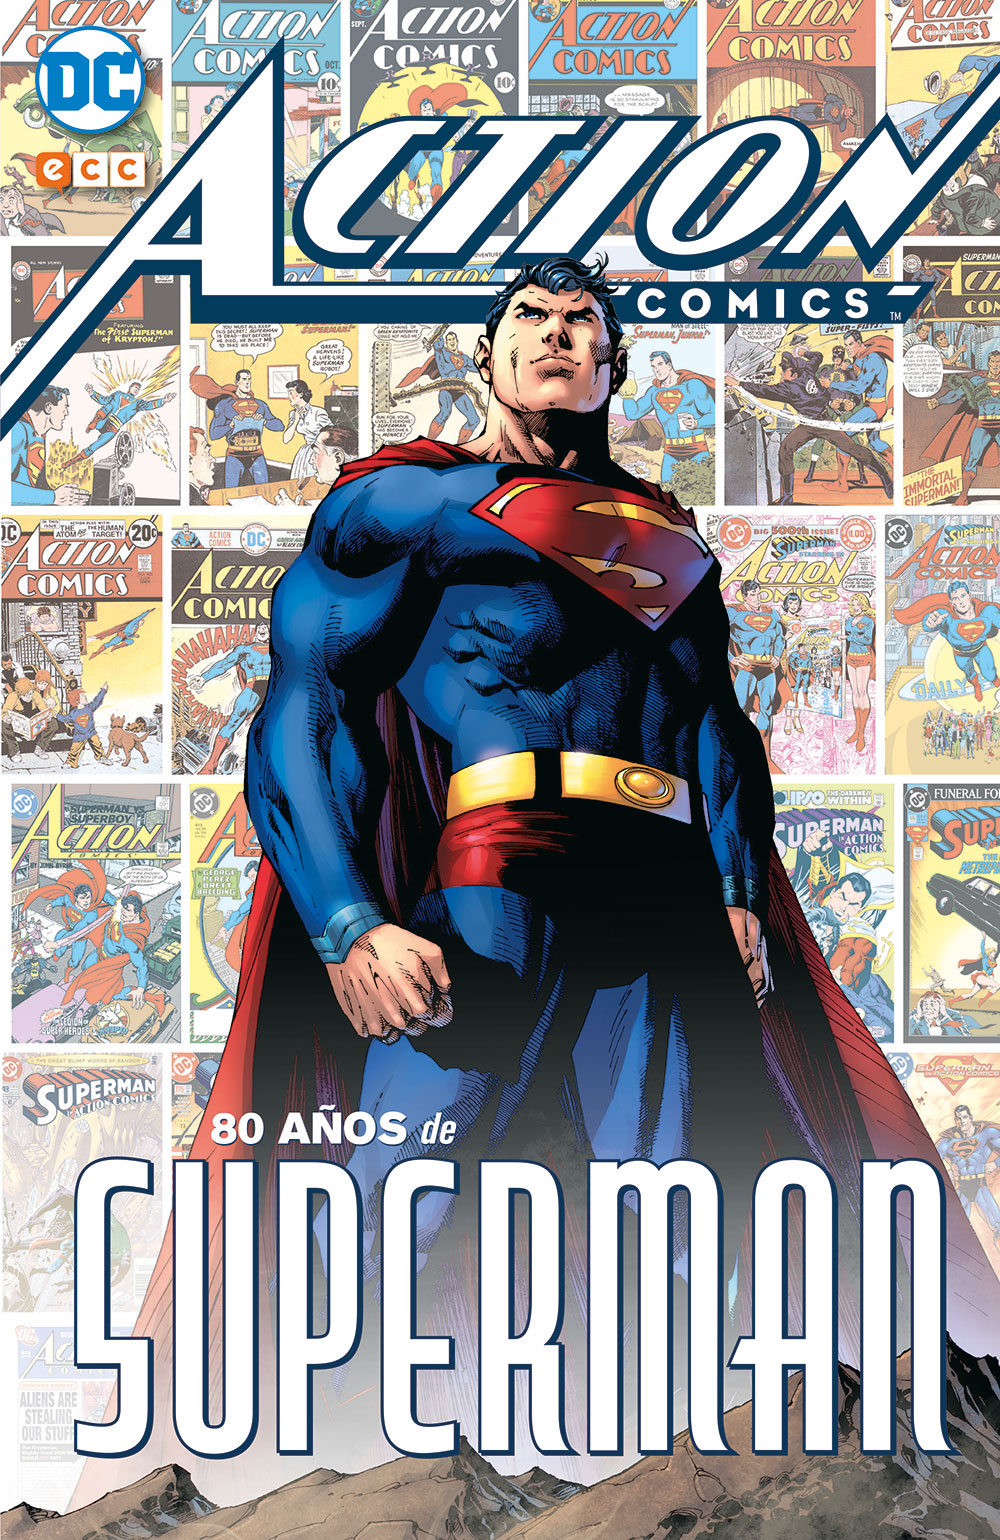 Action Cómics: 80 años de Superman